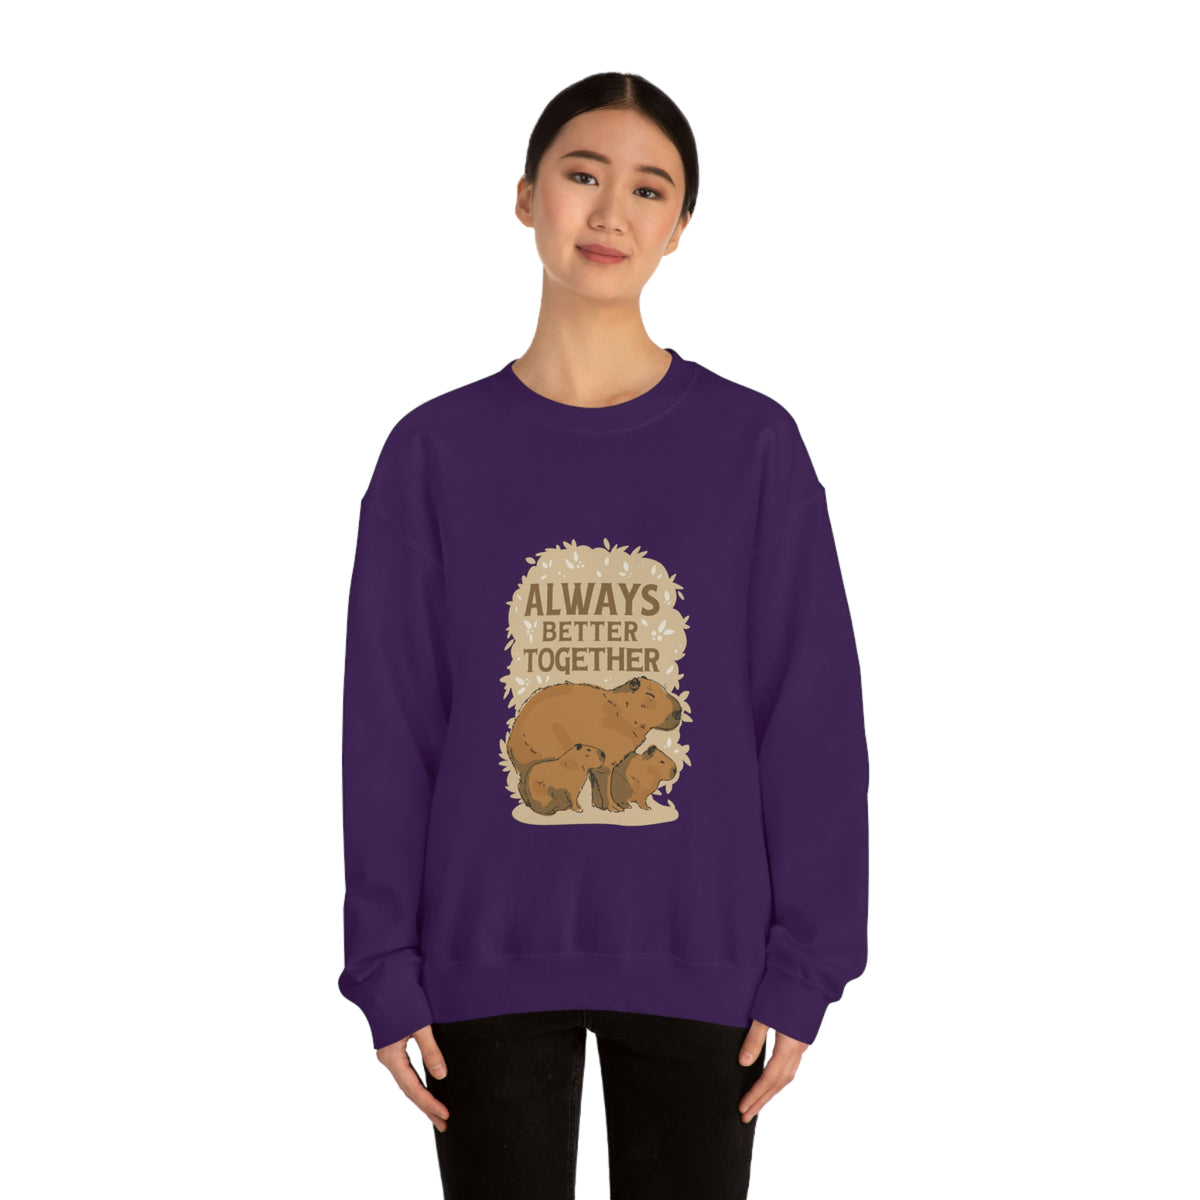 Capybara Family Together - Unisex Sweatshirt